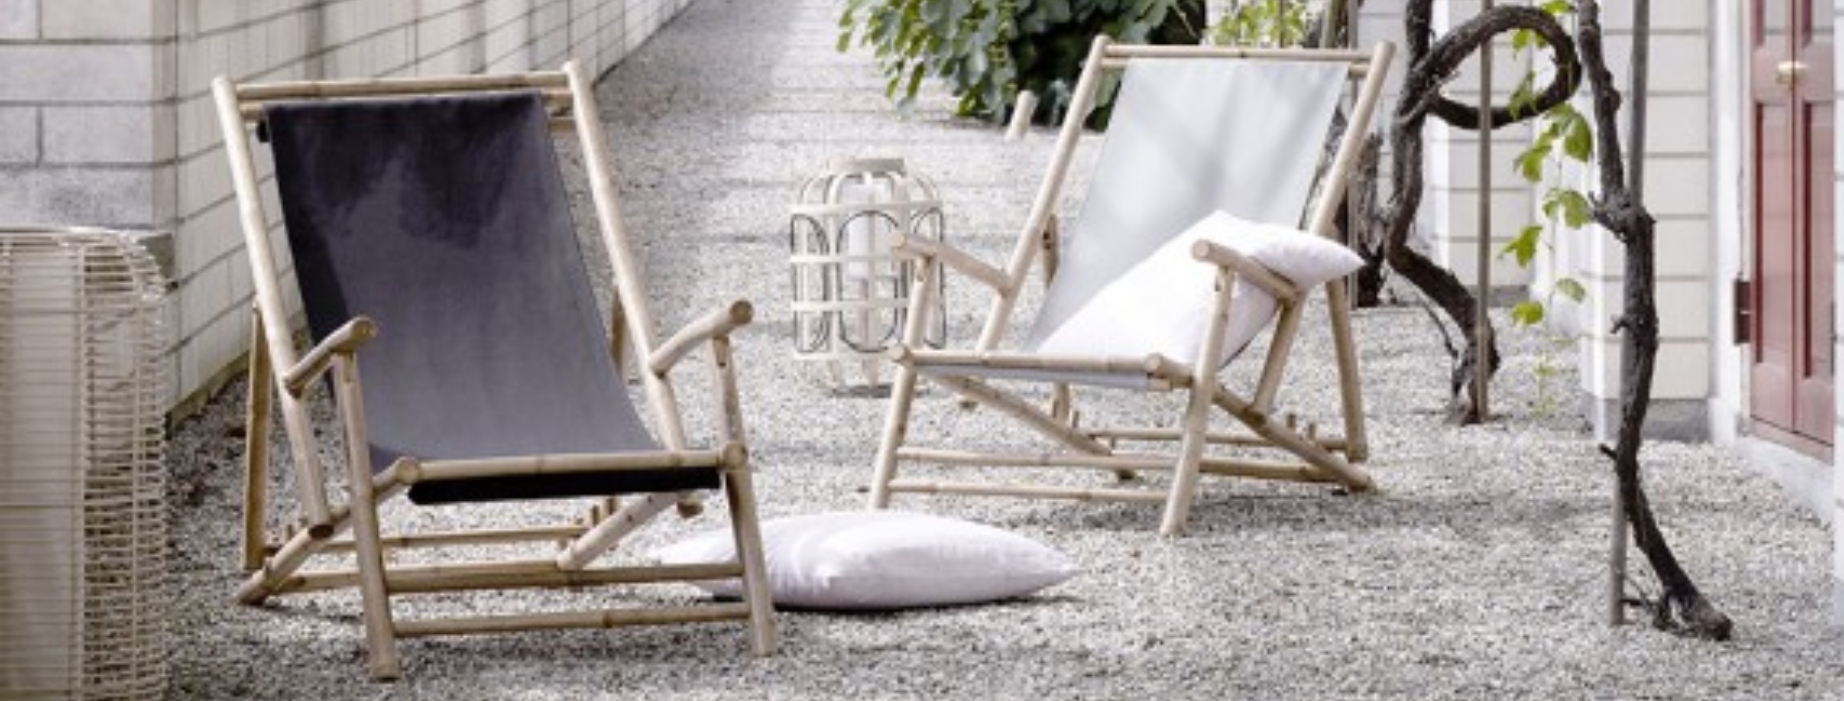 Los muebles que no pueden faltar este verano en tu terraza o jardín tumbonas